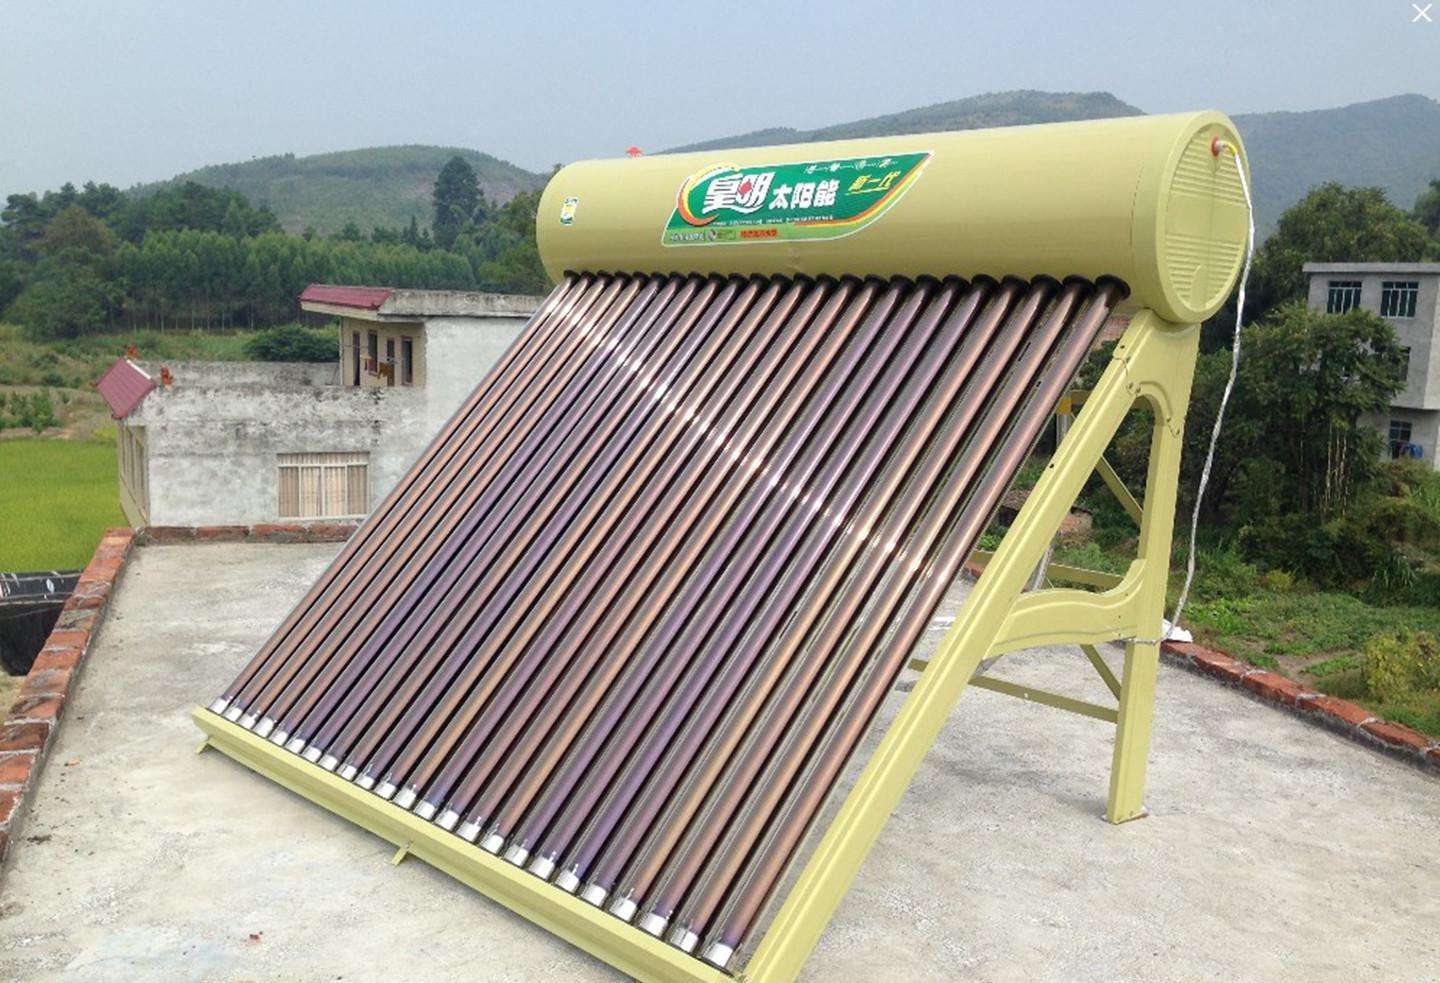 太阳雨太阳能热水器—太阳雨太阳能热水器怎么样